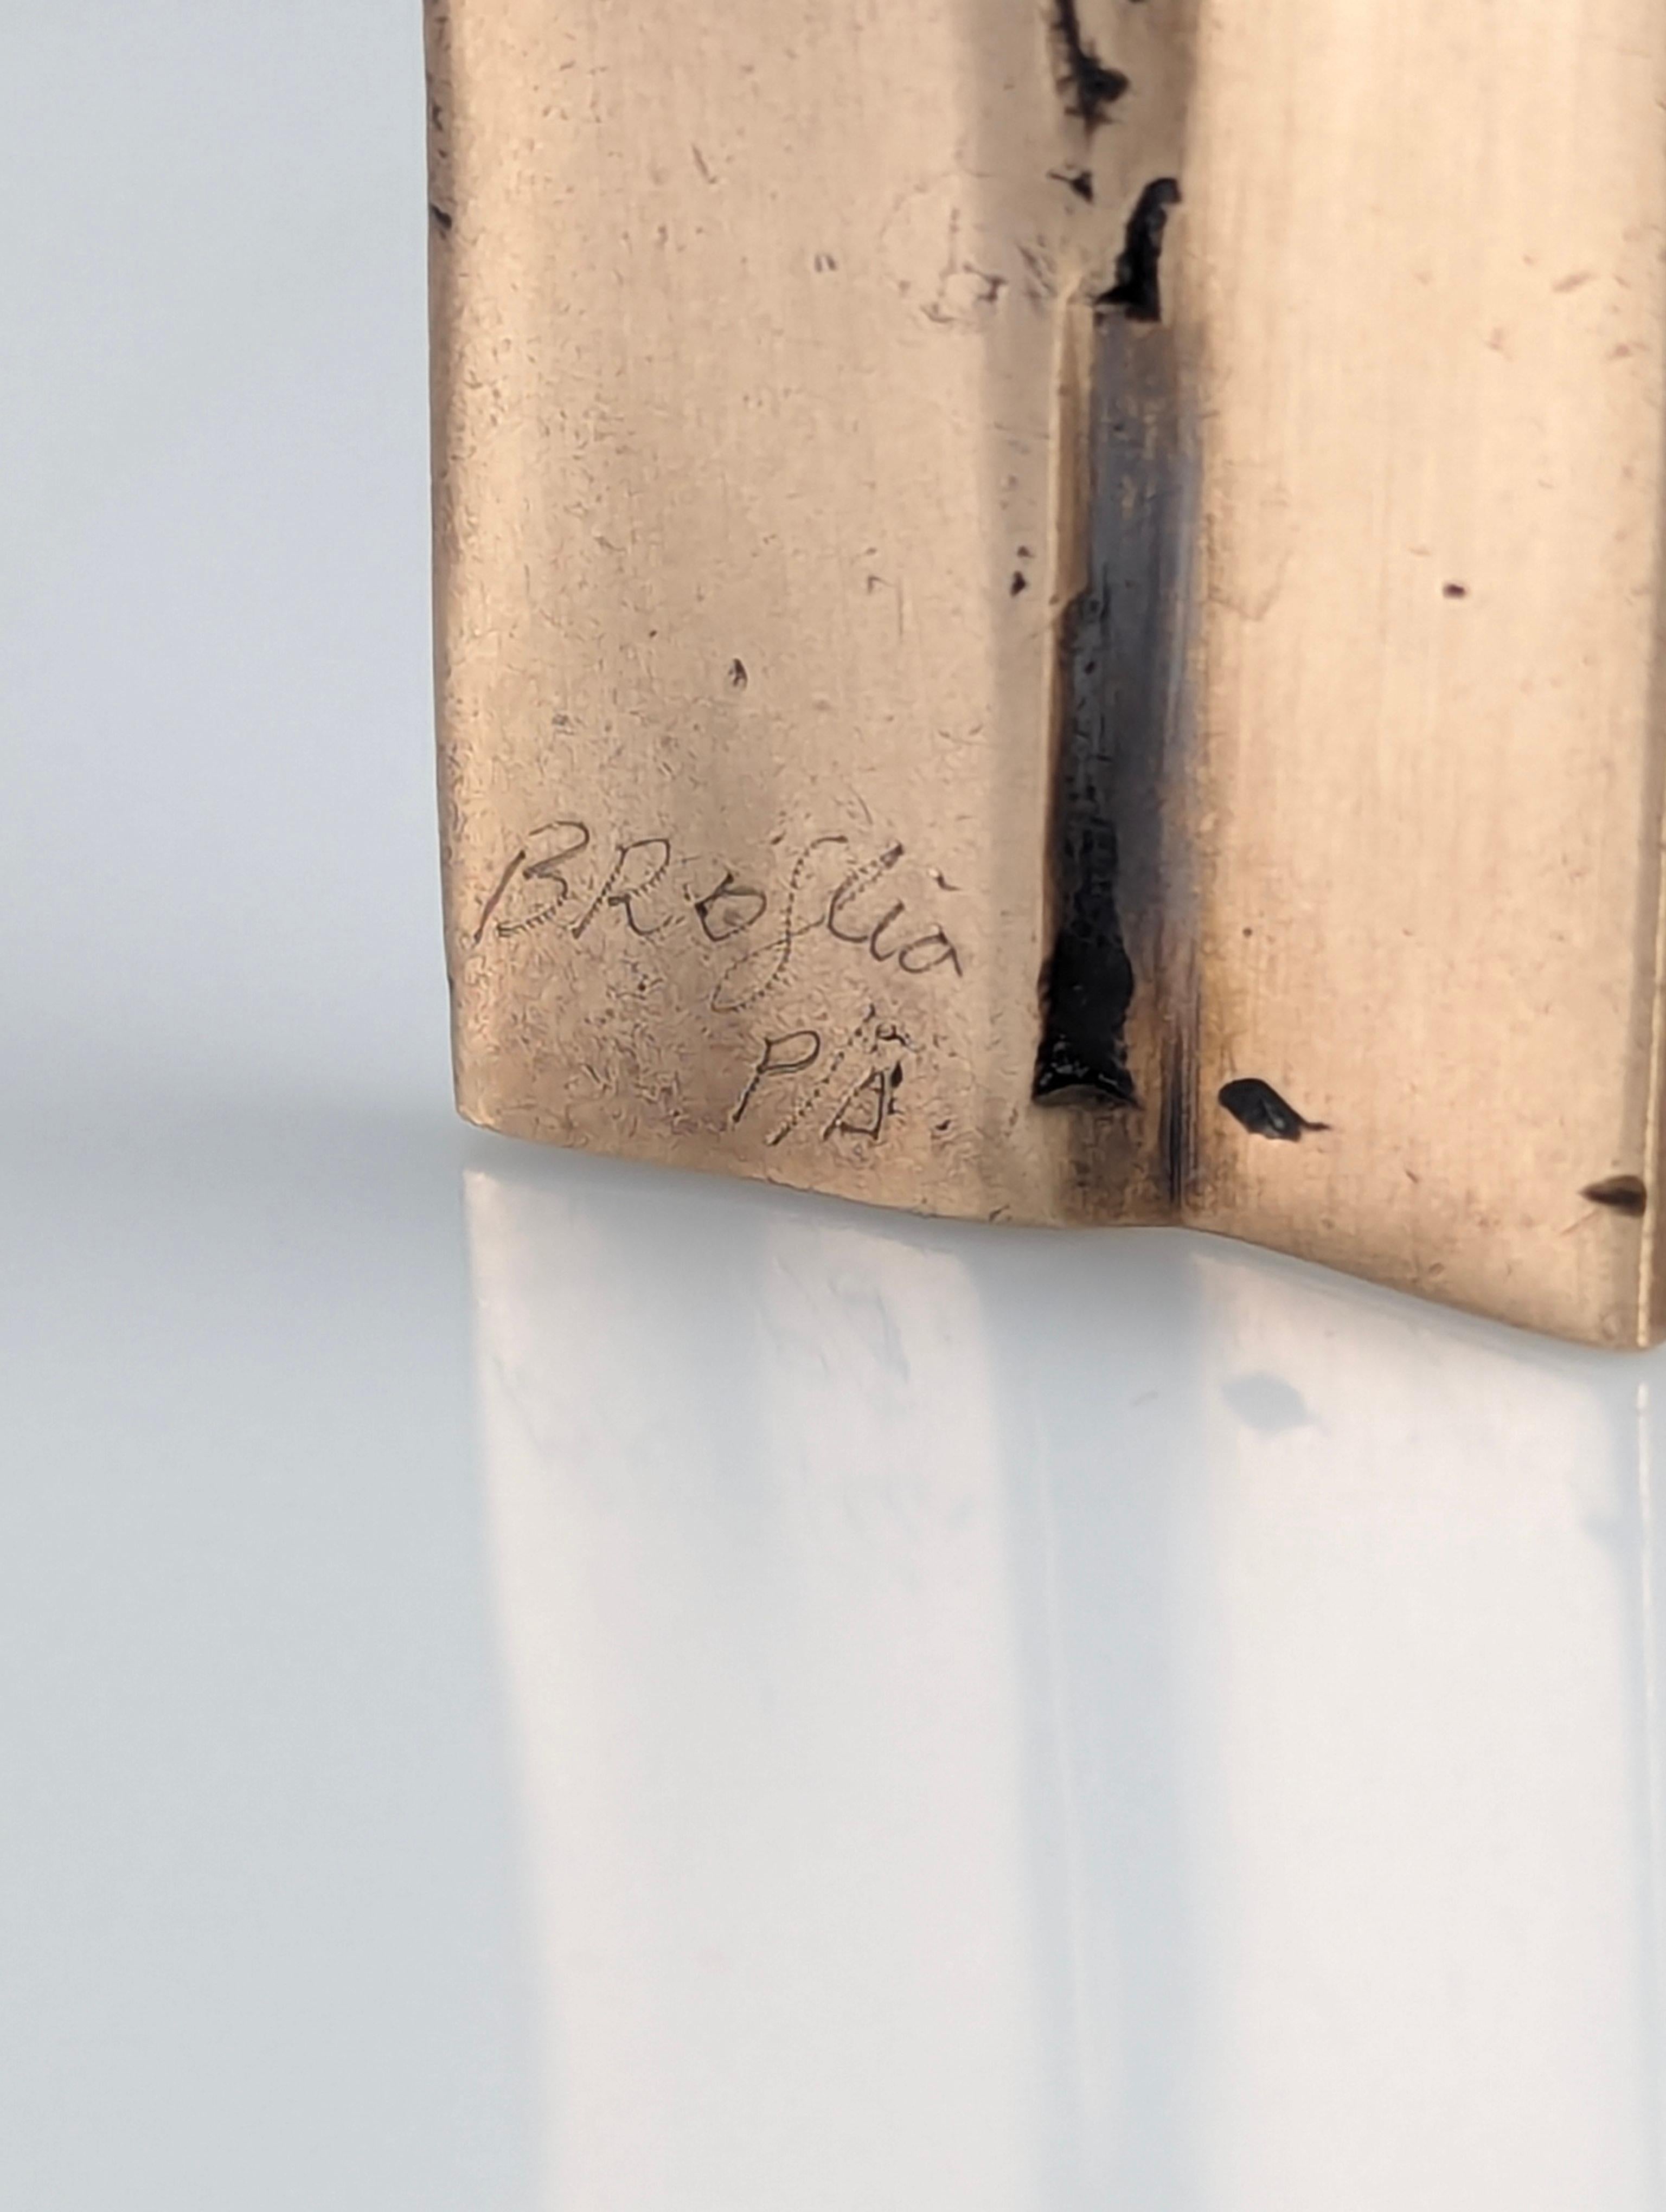 Skulptur-Halskette des großen internationalen Künstlers Enrique Broglia (1942 - 2013), signiert und als Urhebernachweis gekennzeichnet. Ein wunderschönes, einzigartiges Schmuckstück aus Bronze, das sich durch seine Fähigkeit auszeichnet, die